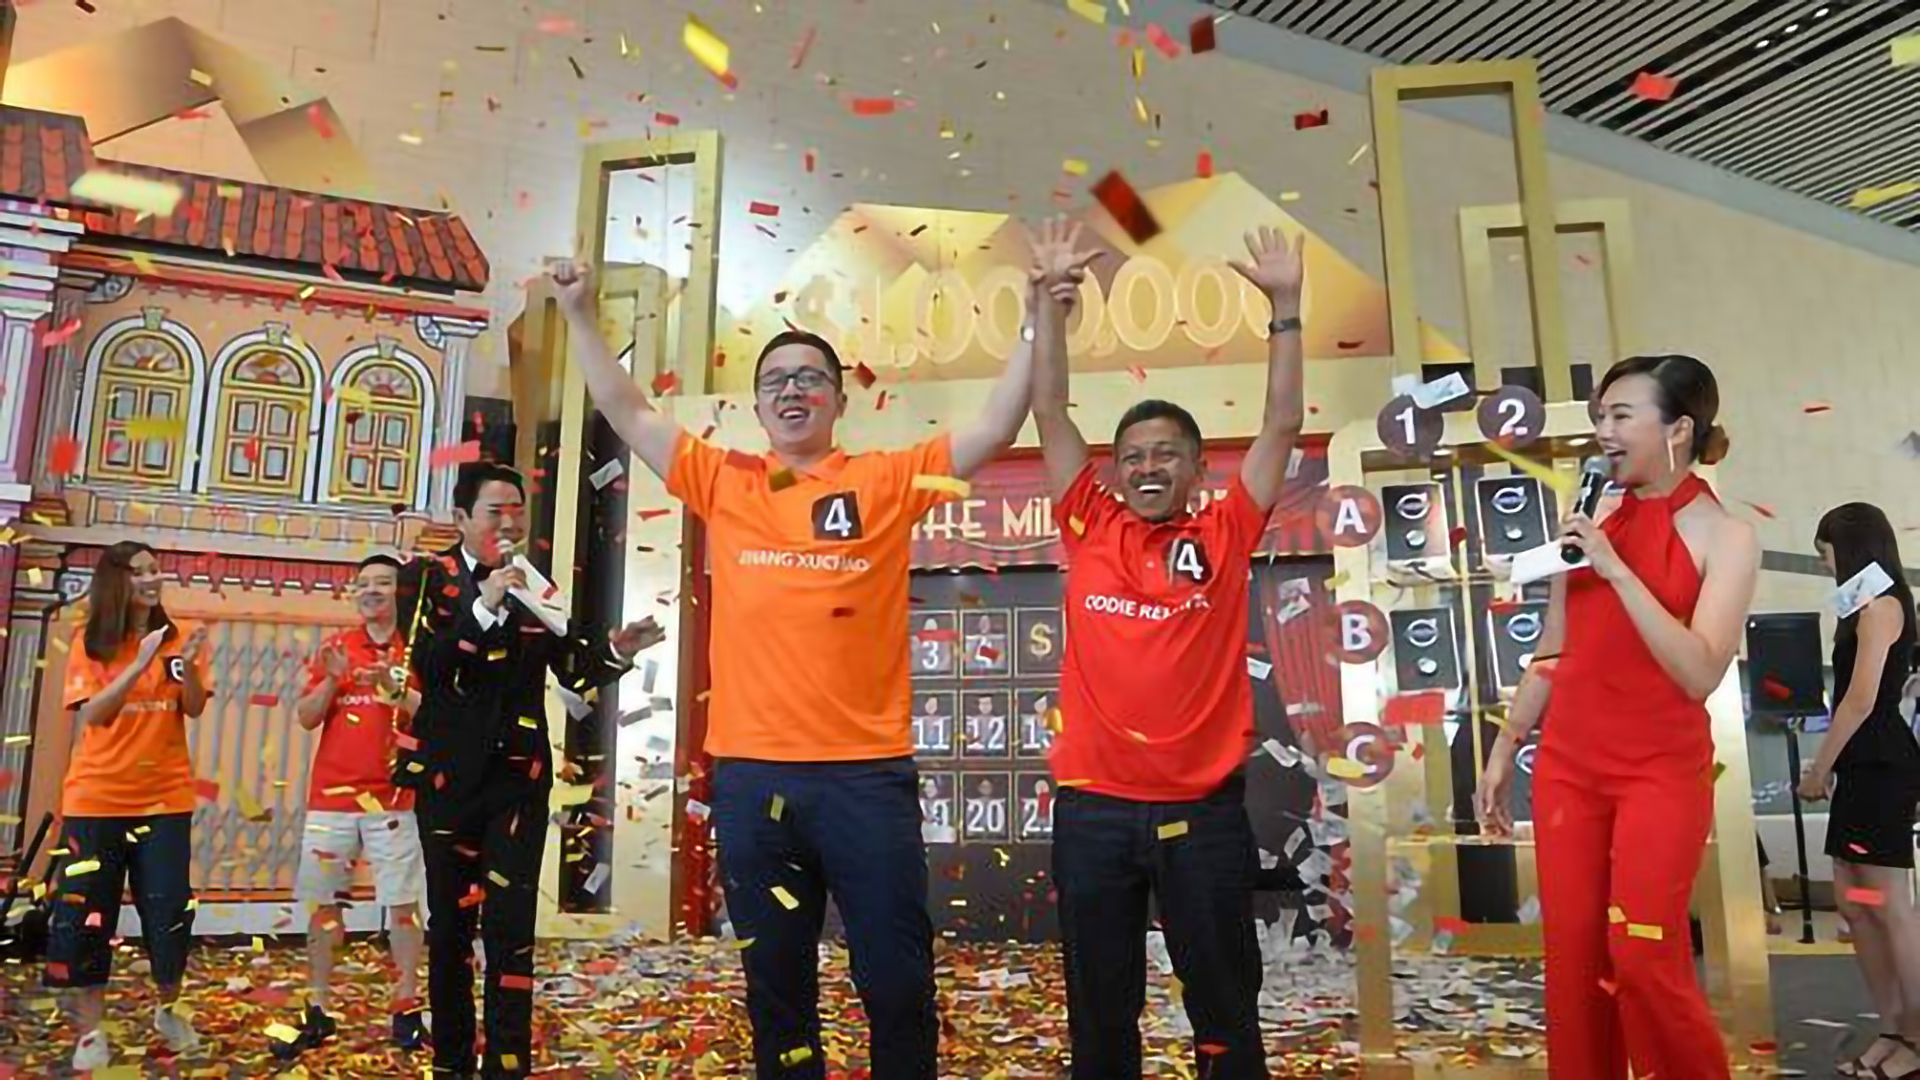 Pengusaha dari Indonesia dan pelatih baseball dari Cina Memenangkan Millionaire Grand Draw Bandara Changi